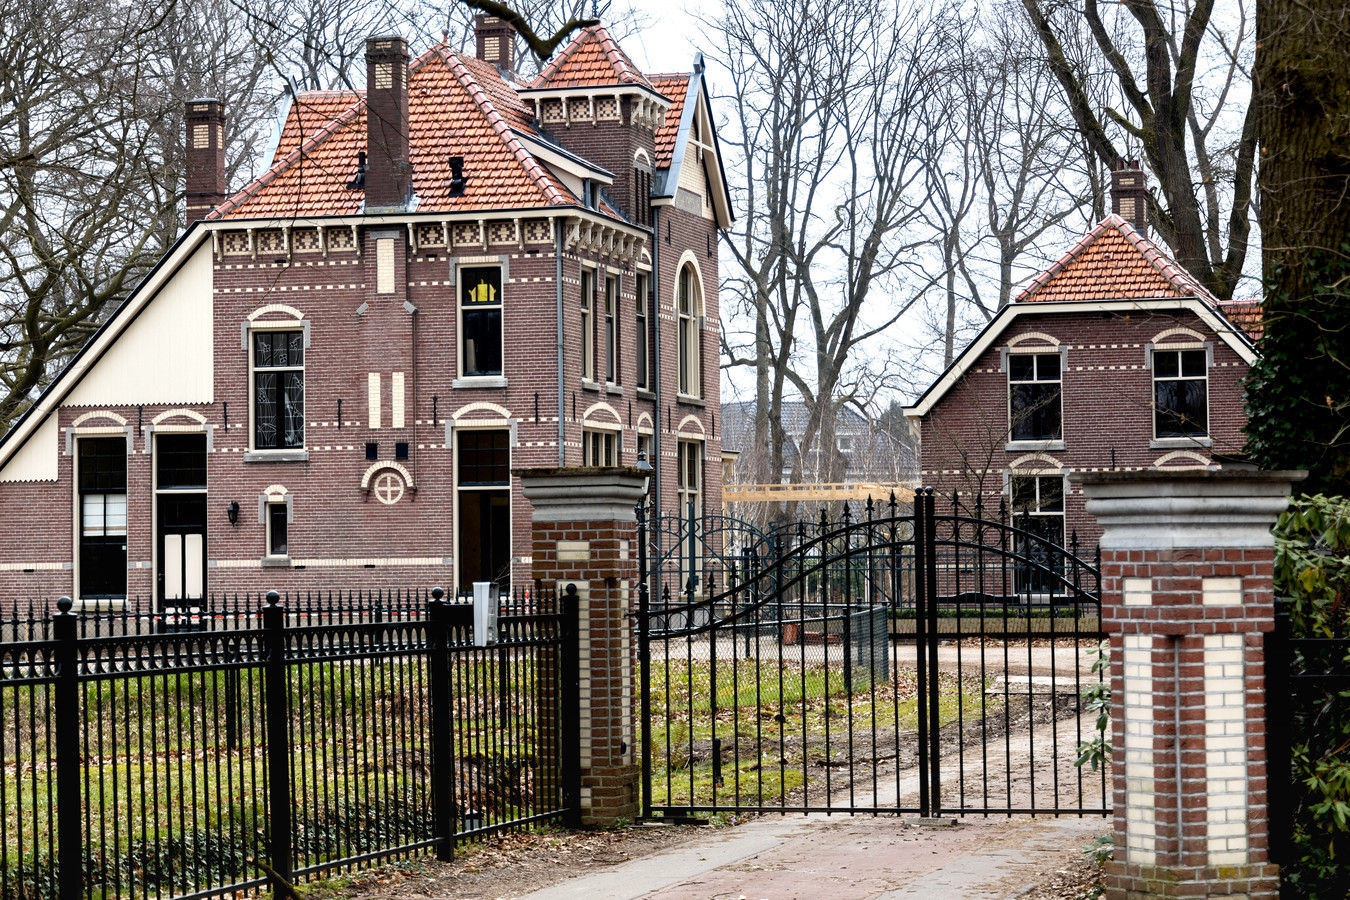 Villa Kortonjo aan de Aalsterweg in Eindhoven. Na de sloop van het interieur, zonder permissie, heeft de eigenaar nu wel een vergunning aangevraagd voor de verbouwing van het monumentale pand.